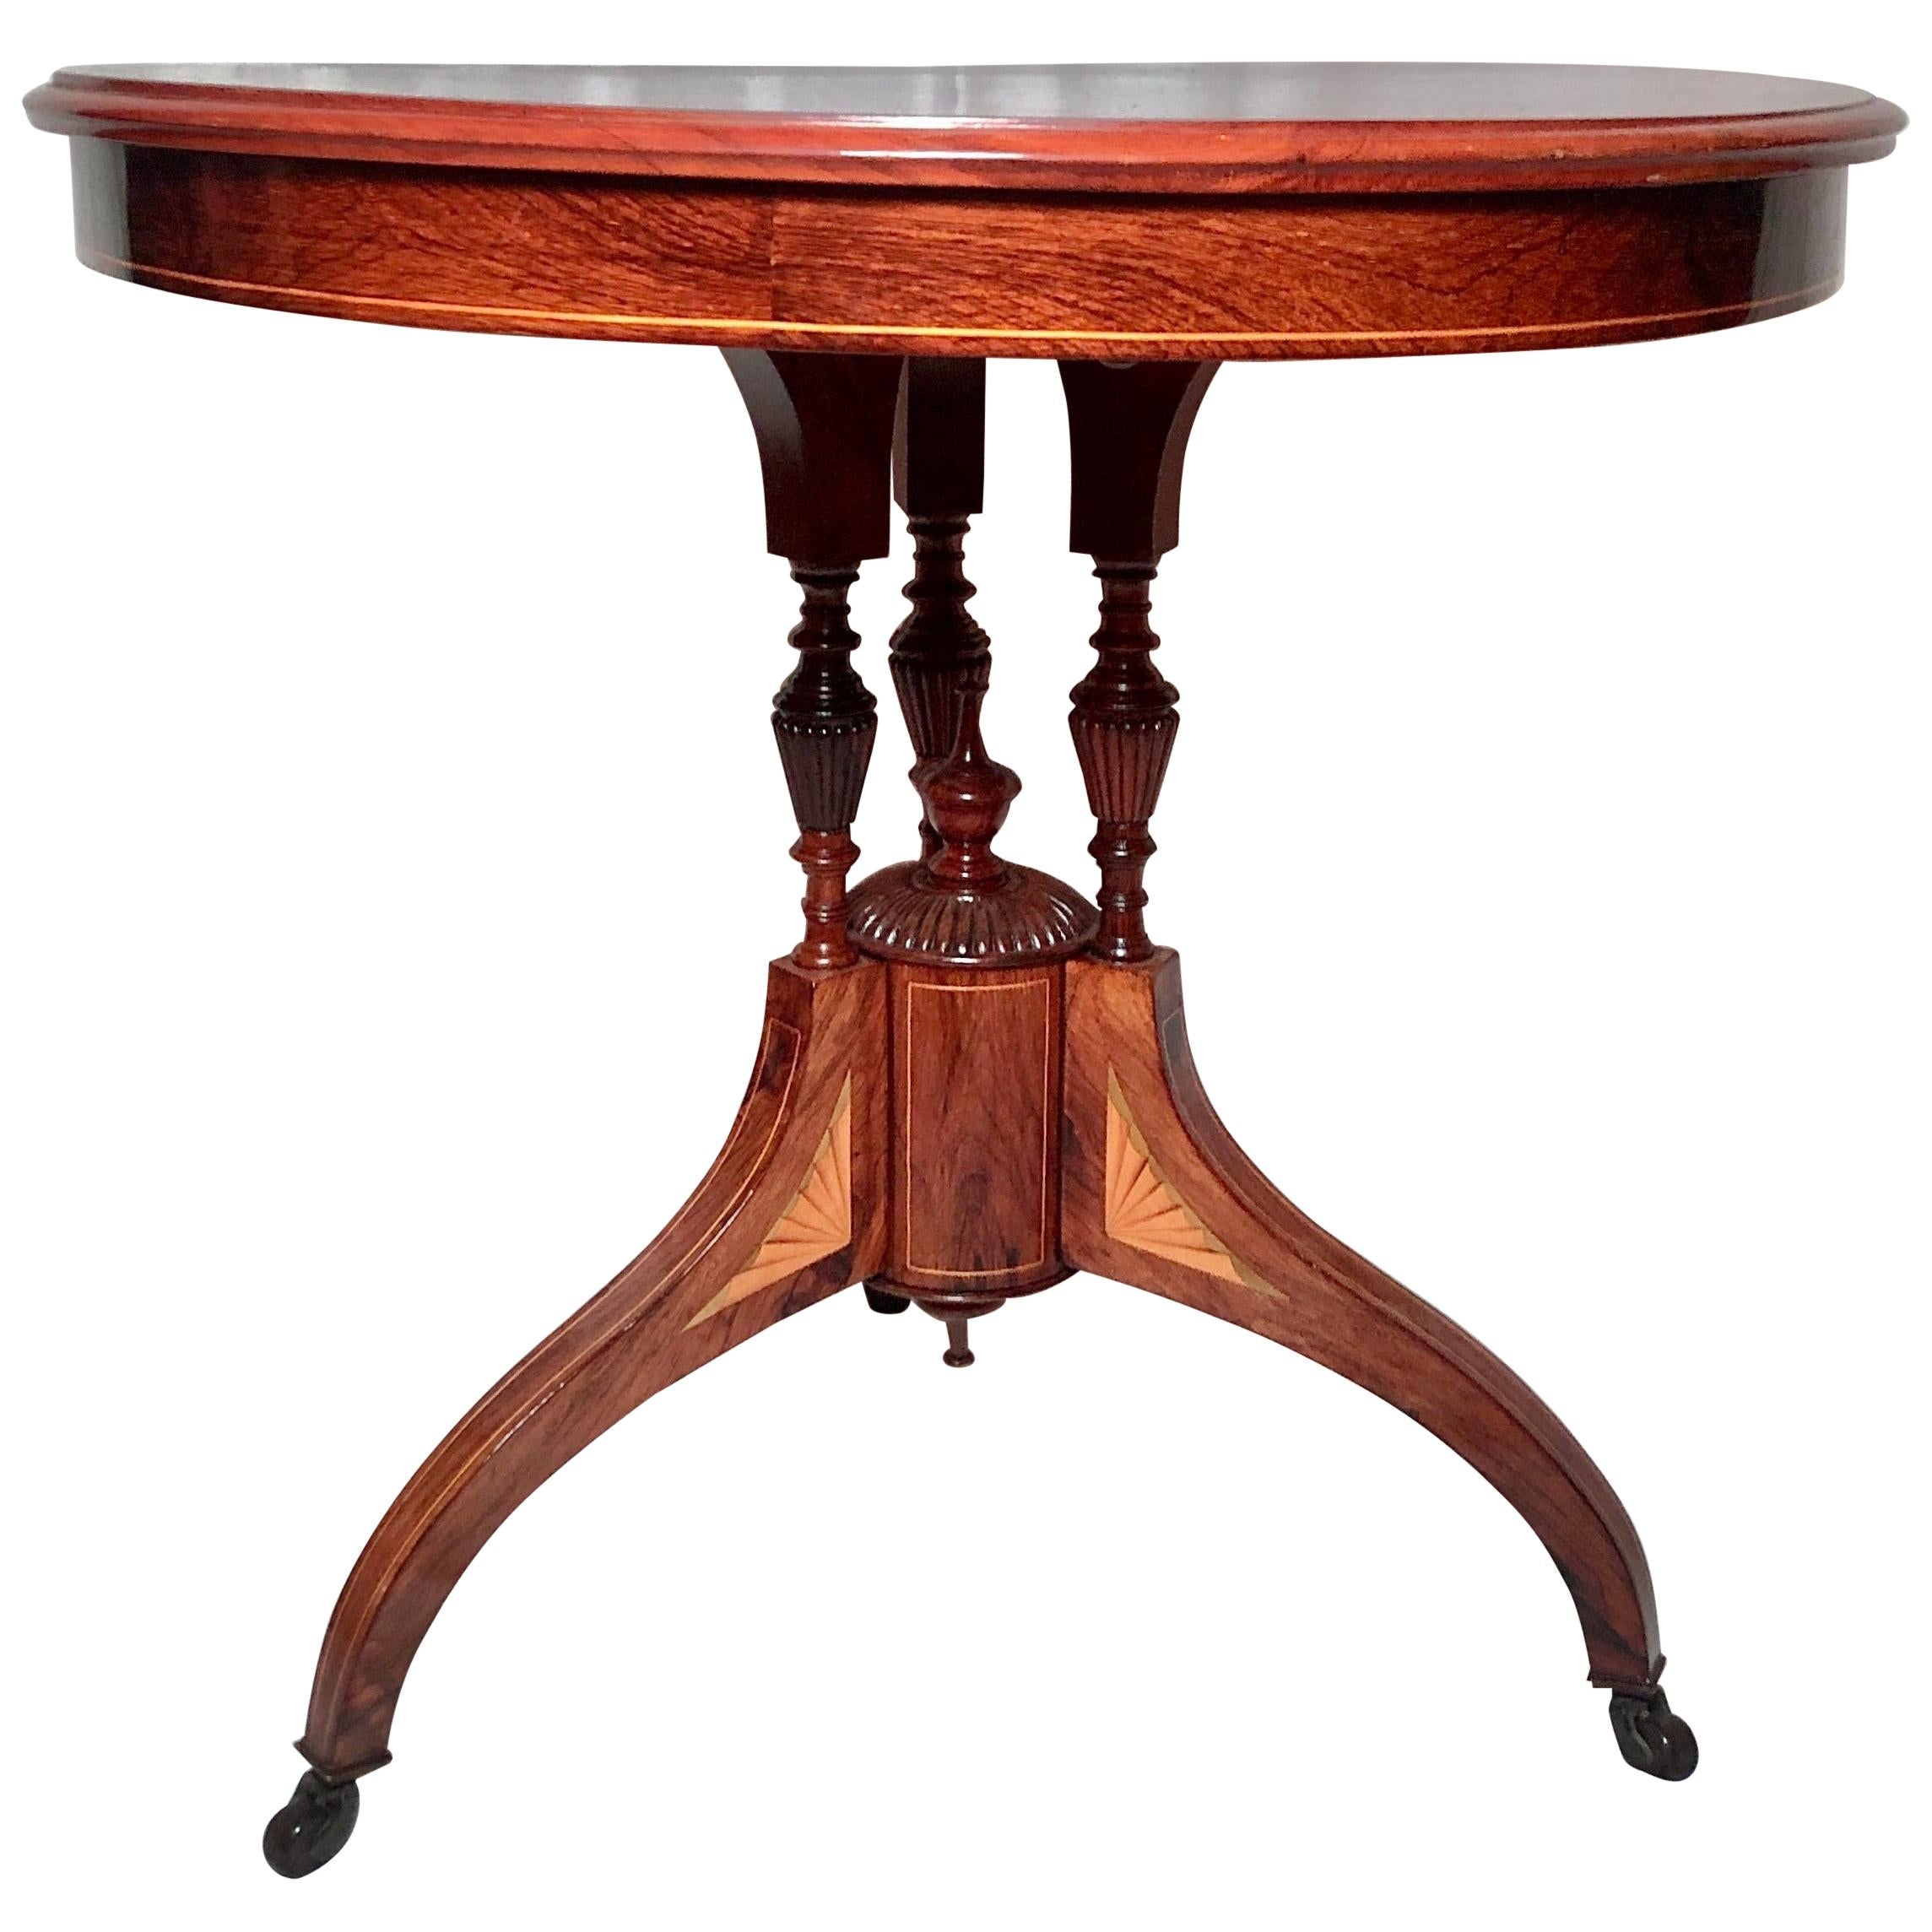 Antiker englischer viktorianischer Tisch aus Rosenholz mit Intarsien, um 1860- 1870